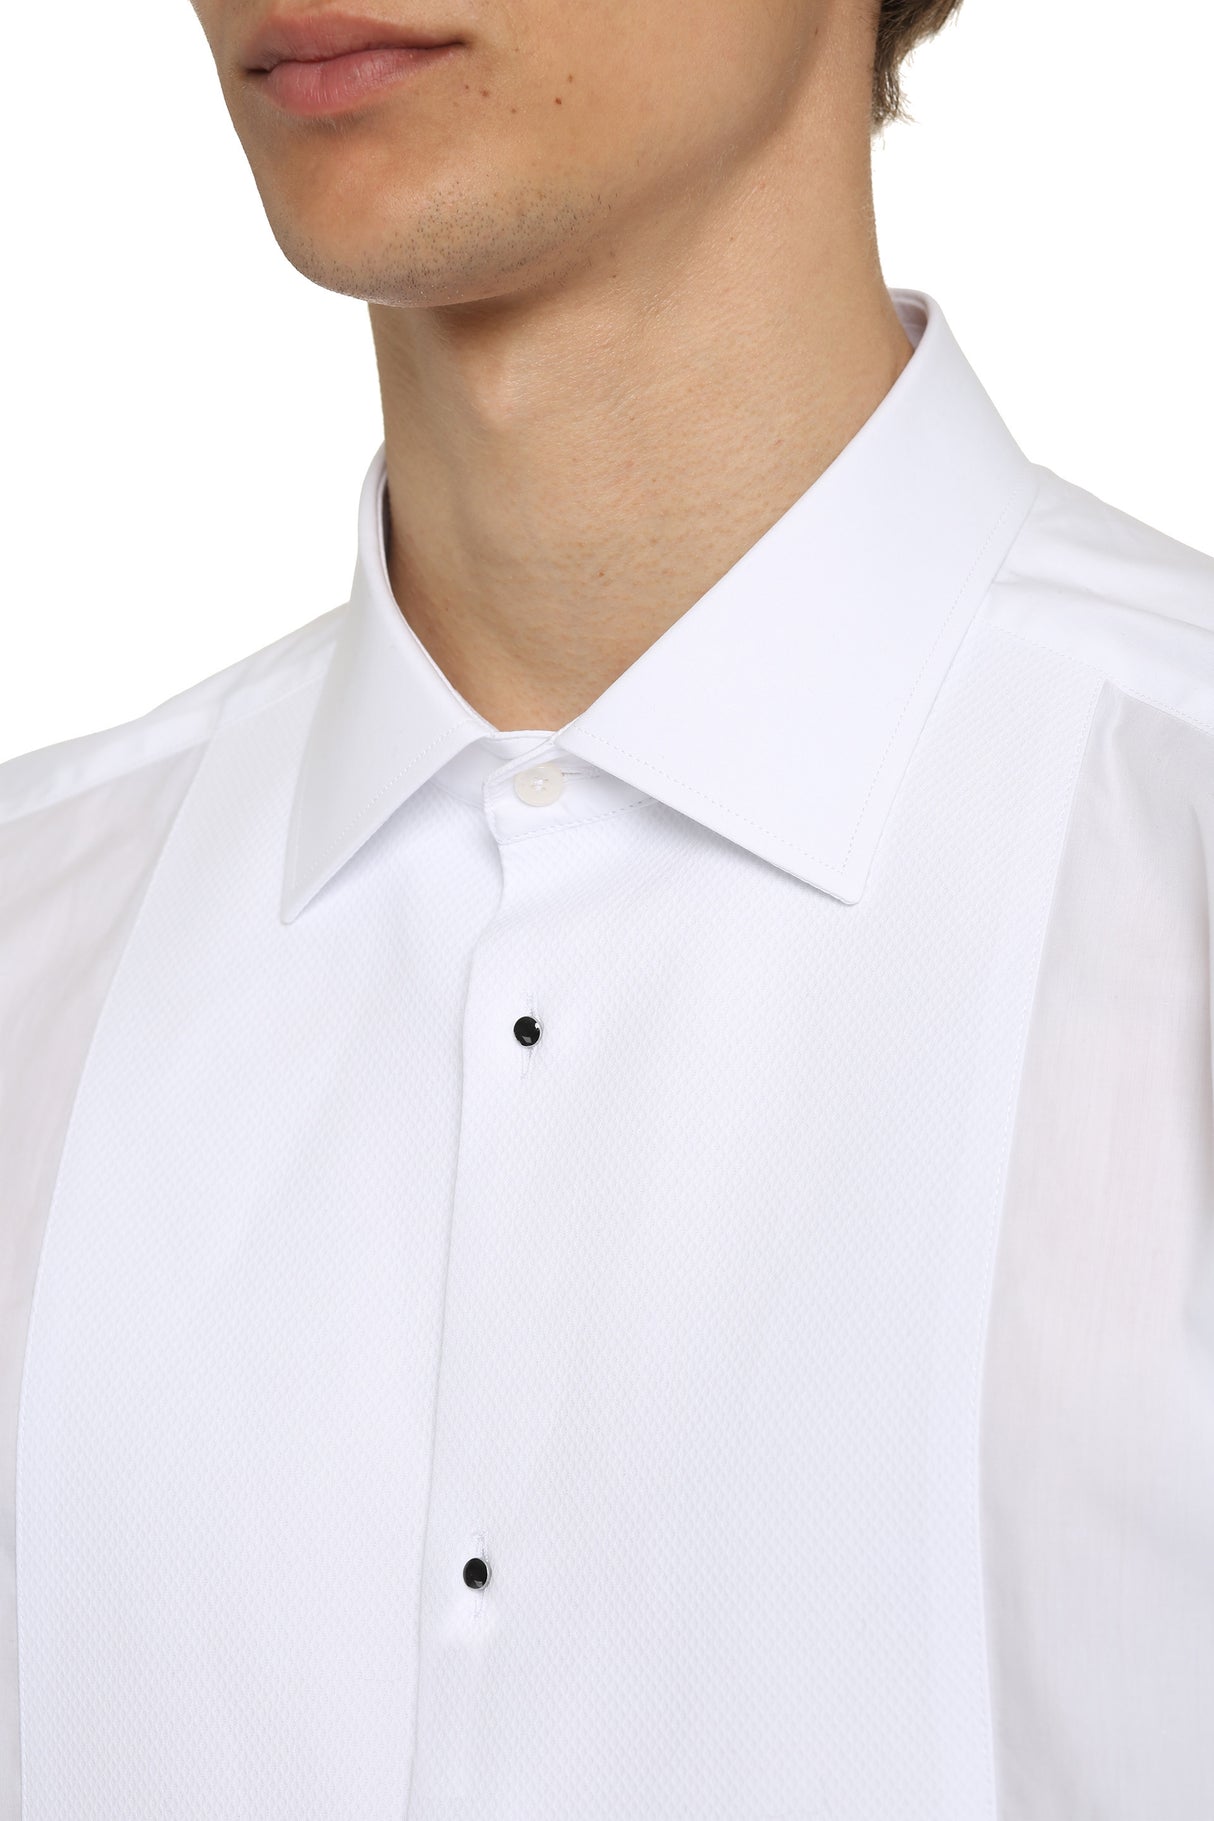 男士白色斜紋領結恤衫, 帶有裝飾鈕扣和圓擺